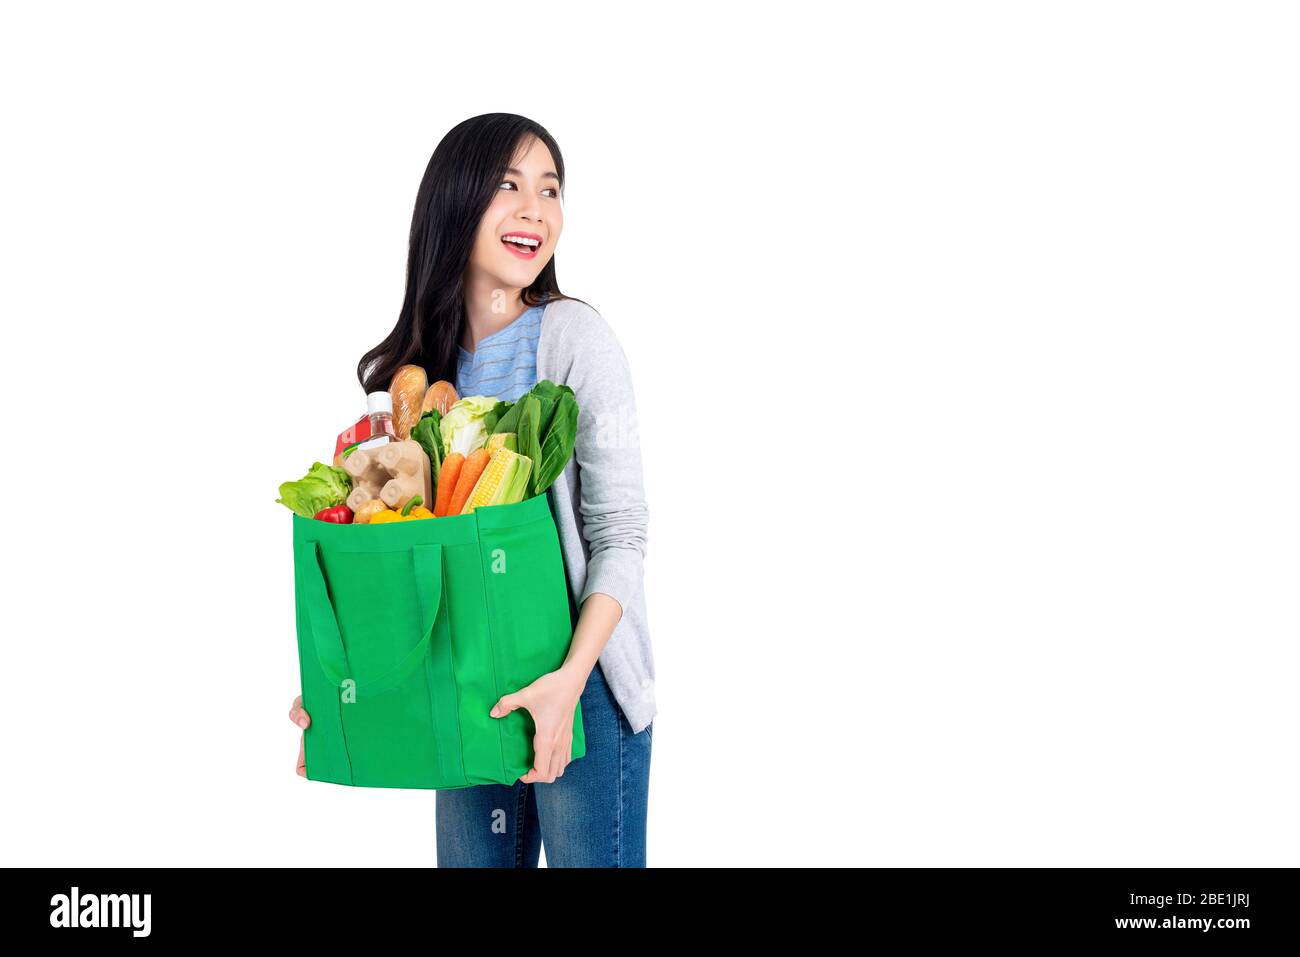 Belle femme asiatique souriante tenant réutilisable sac vert d'achat plein d'épicerie et cherchant à copier l'espace de côté isolé sur fond blanc Banque D'Images